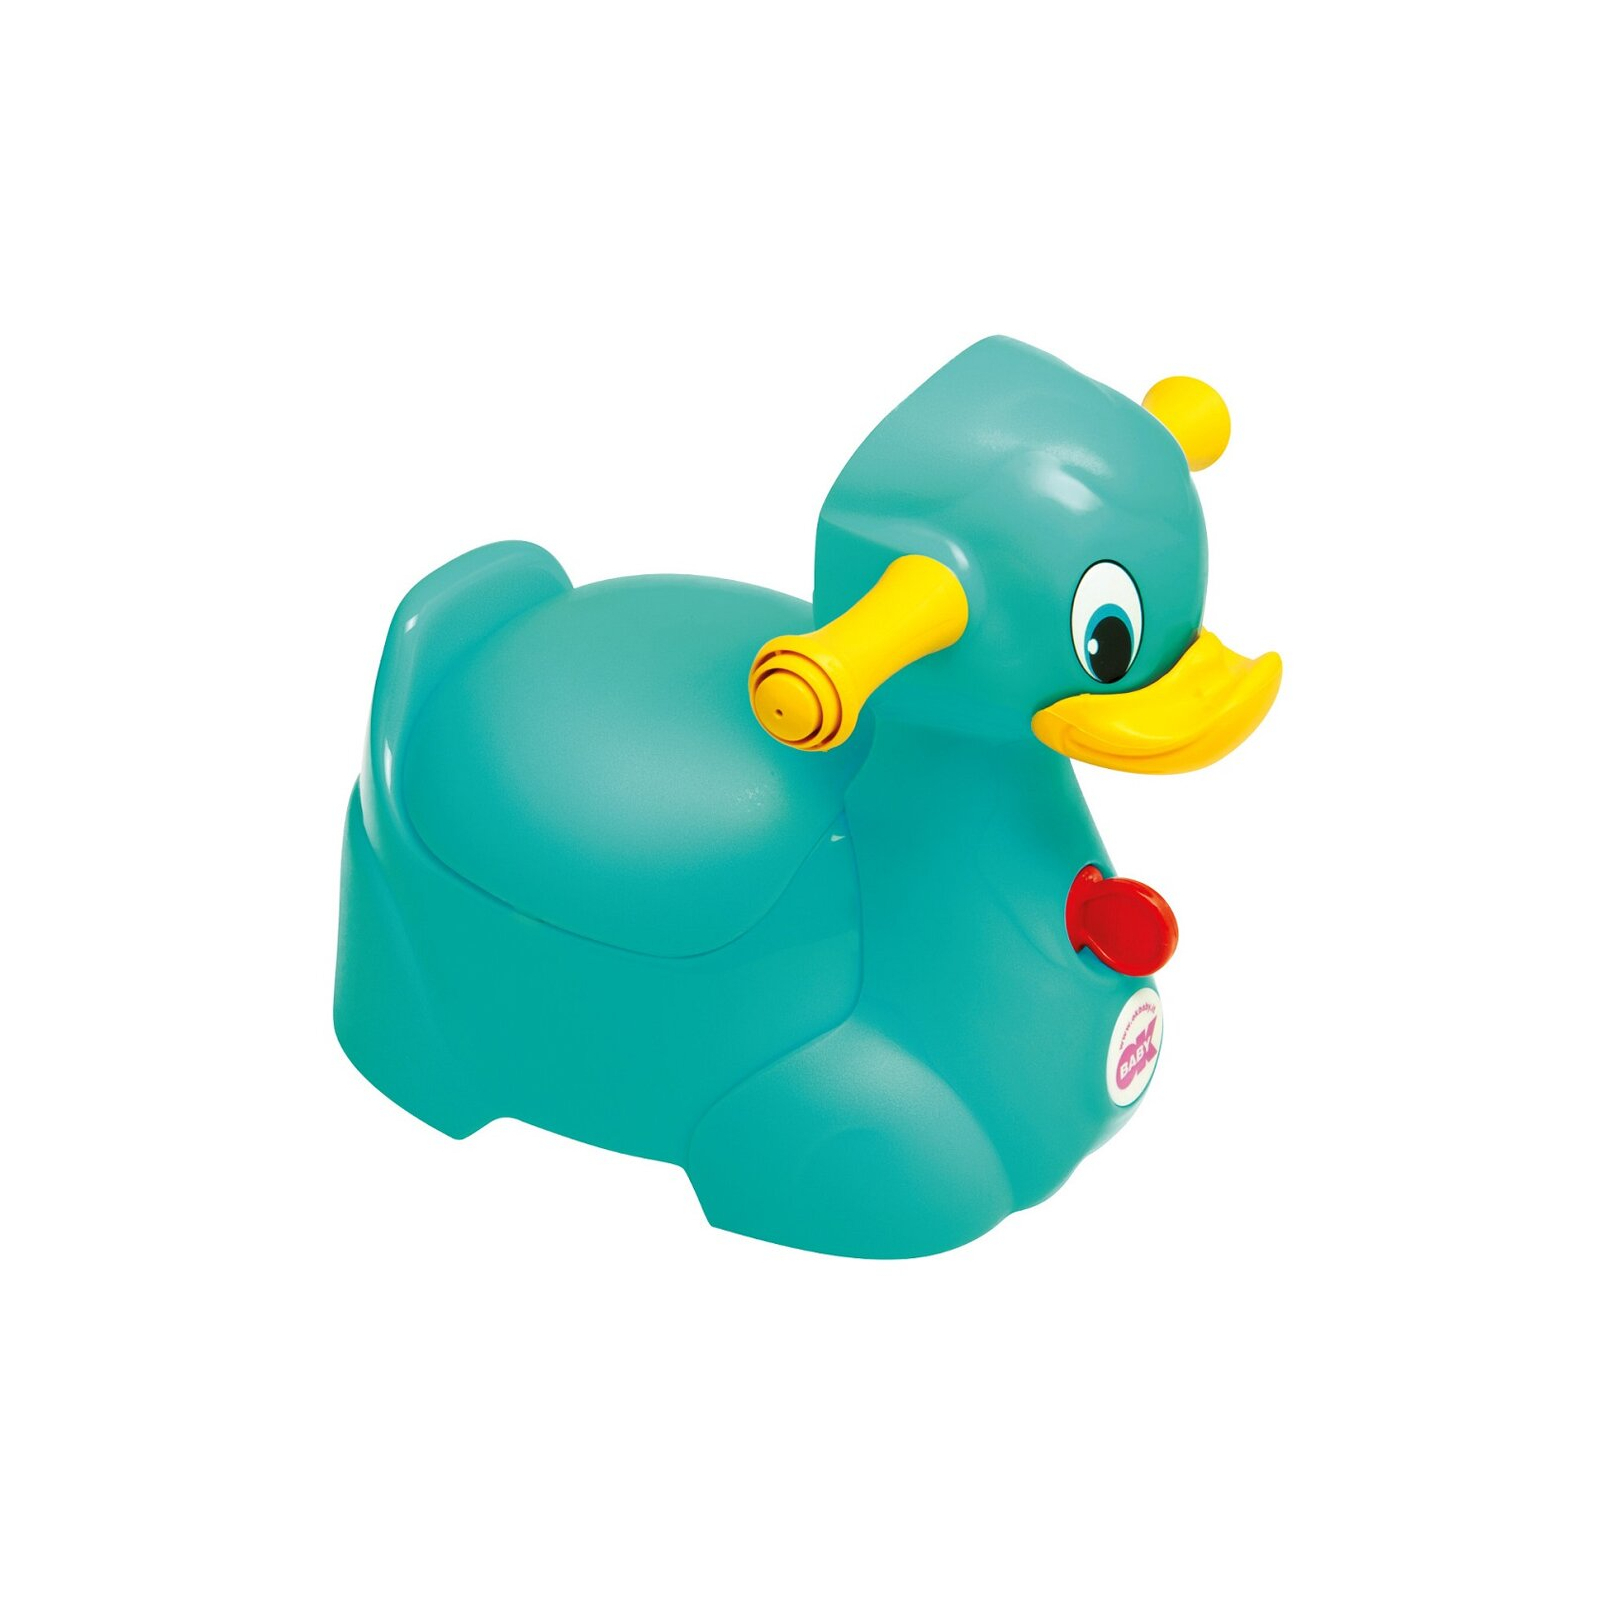 Горшок Ok Baby Quack с ручками для безопасности ребенка, бирюзовый. (37077230)